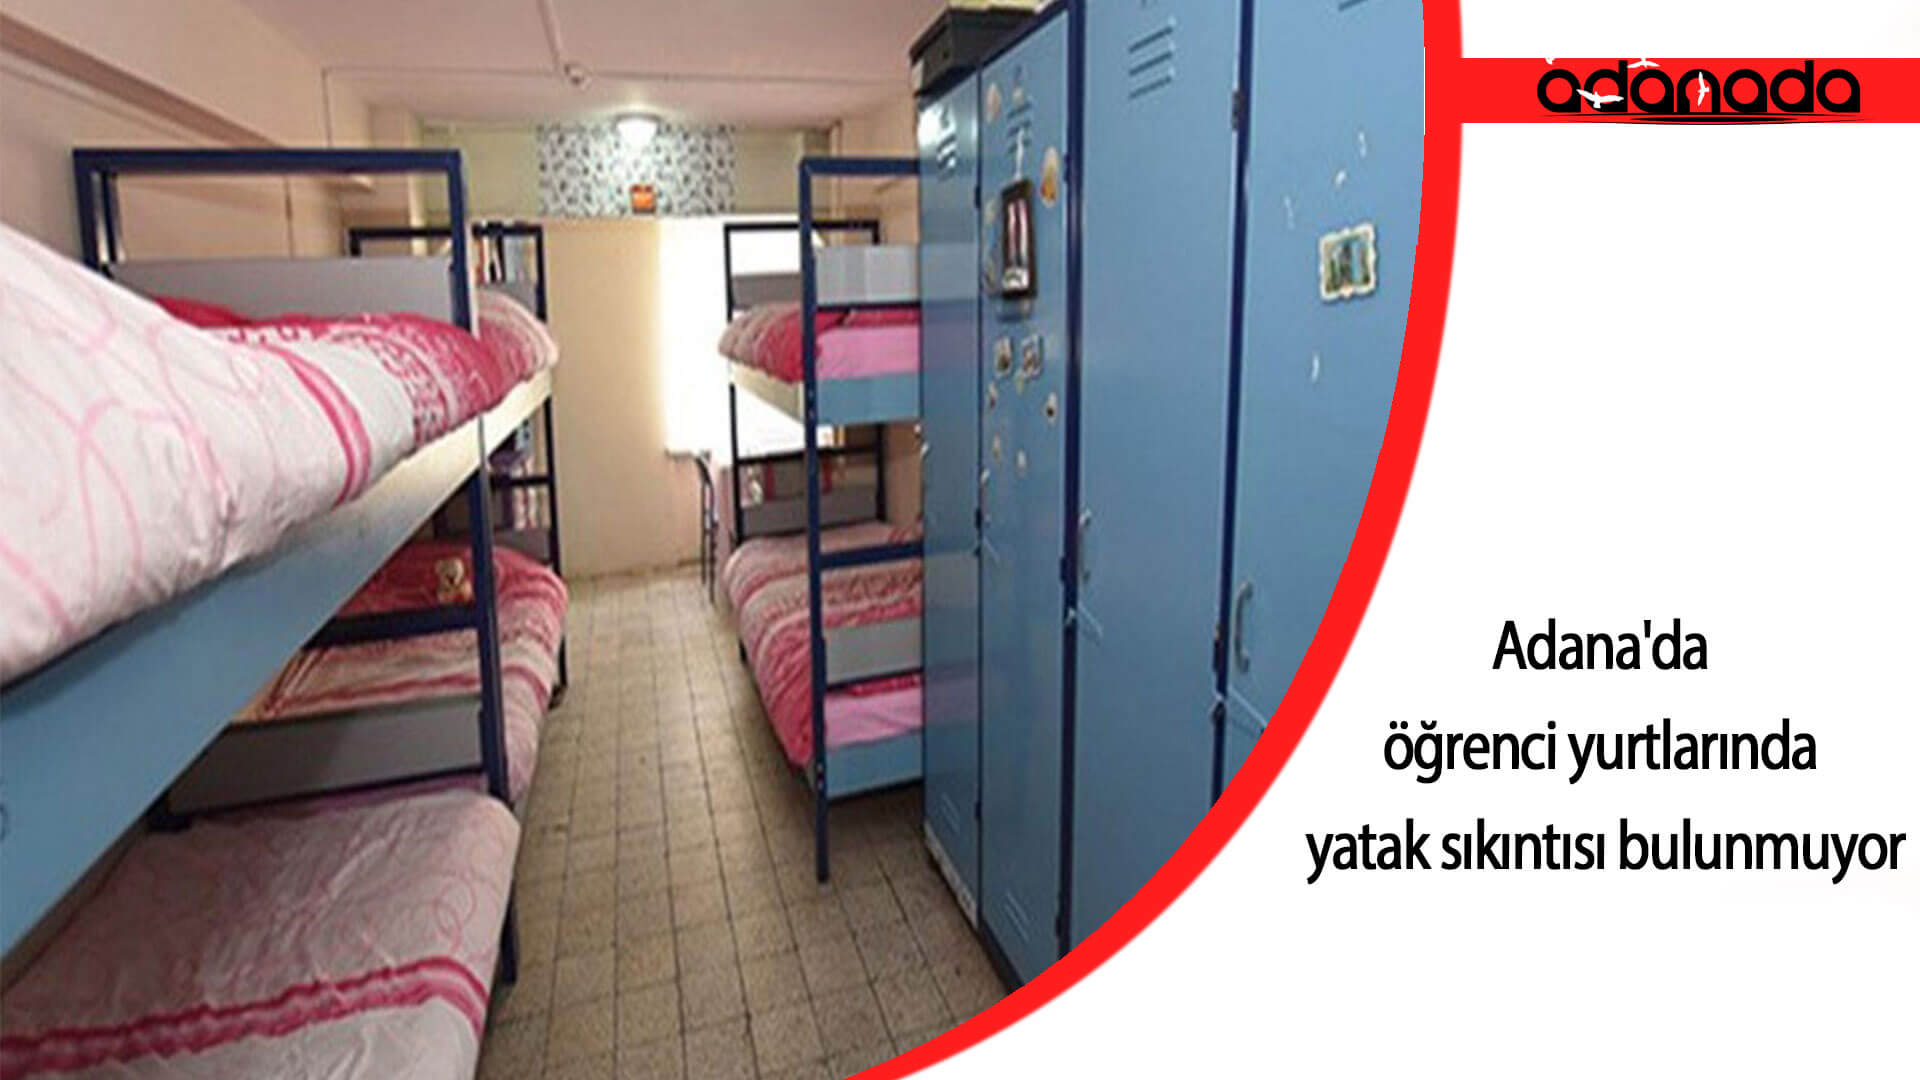 Adana’da öğrenci yurtlarında yatak sıkıntısı bulunmuyor